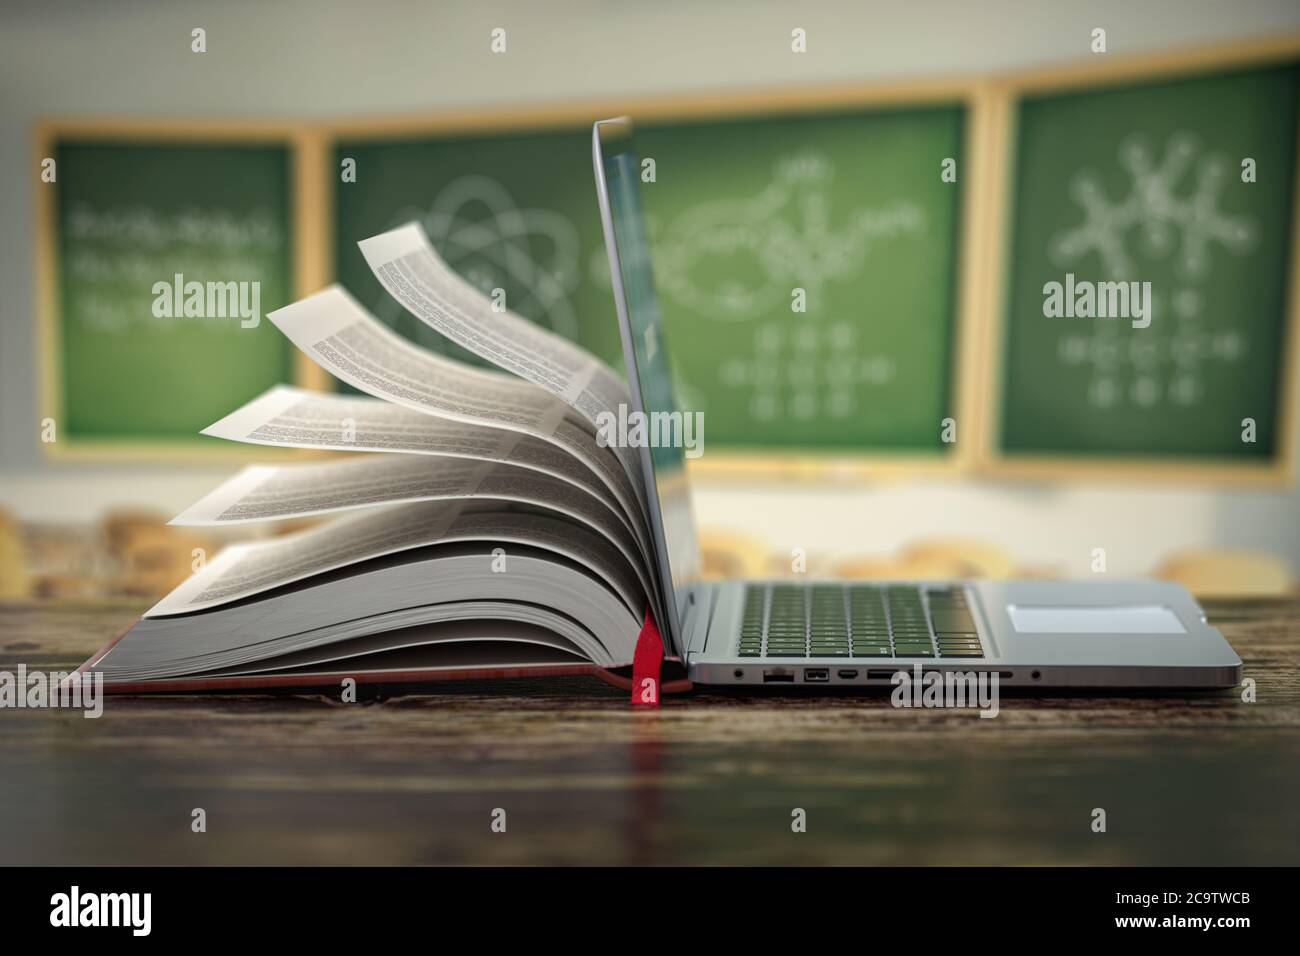 E-Learning Online-Bildung oder Internet-Enzyklopädie Konzept. Öffnen Sie Laptop und Buch zusammenstellung in einem Klassenzimmer. 3d-Illustration Stockfoto